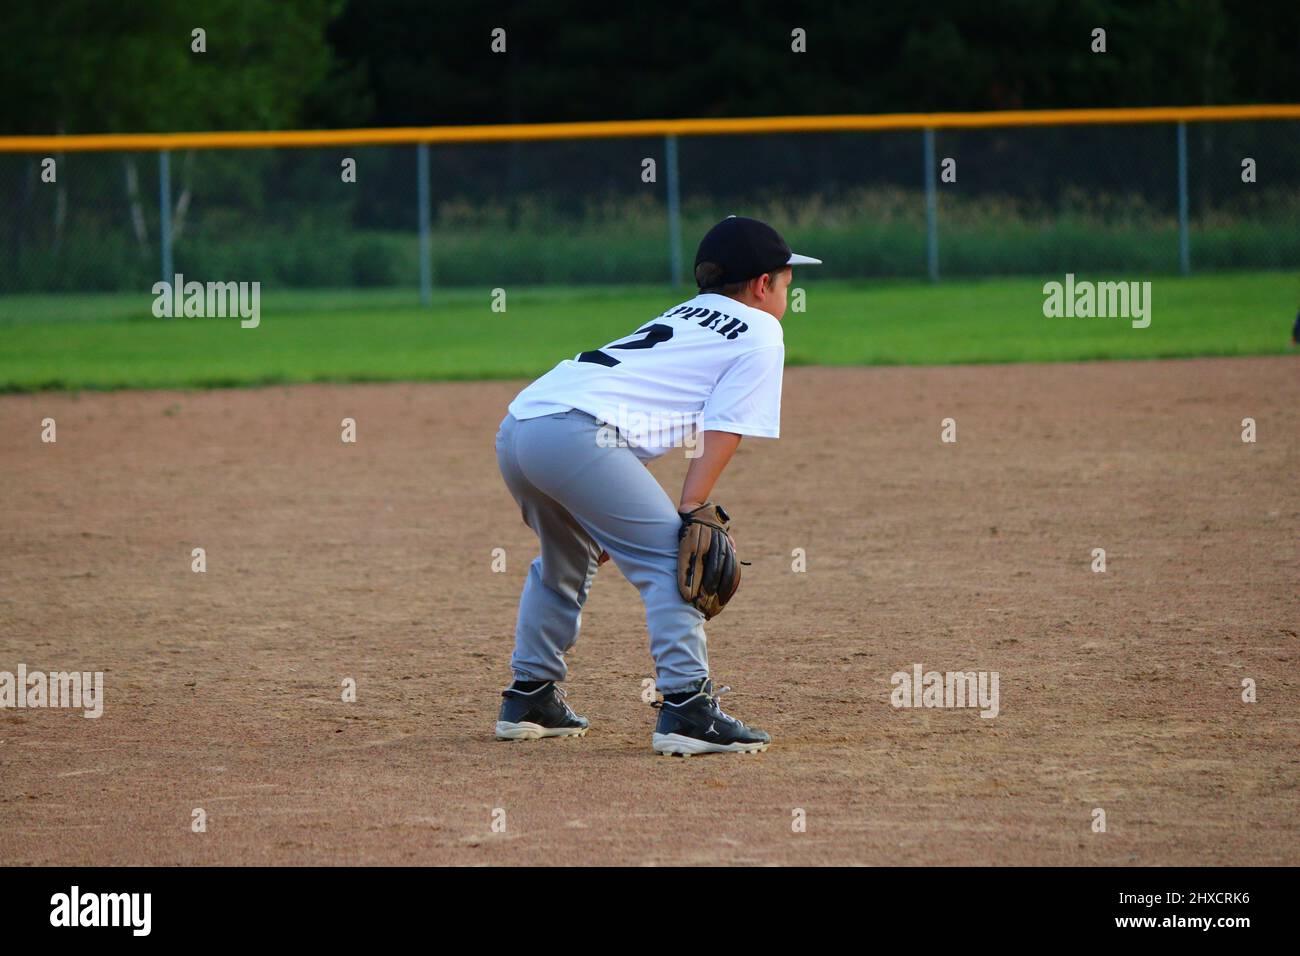 Enjoying youth baseball Stock Photo